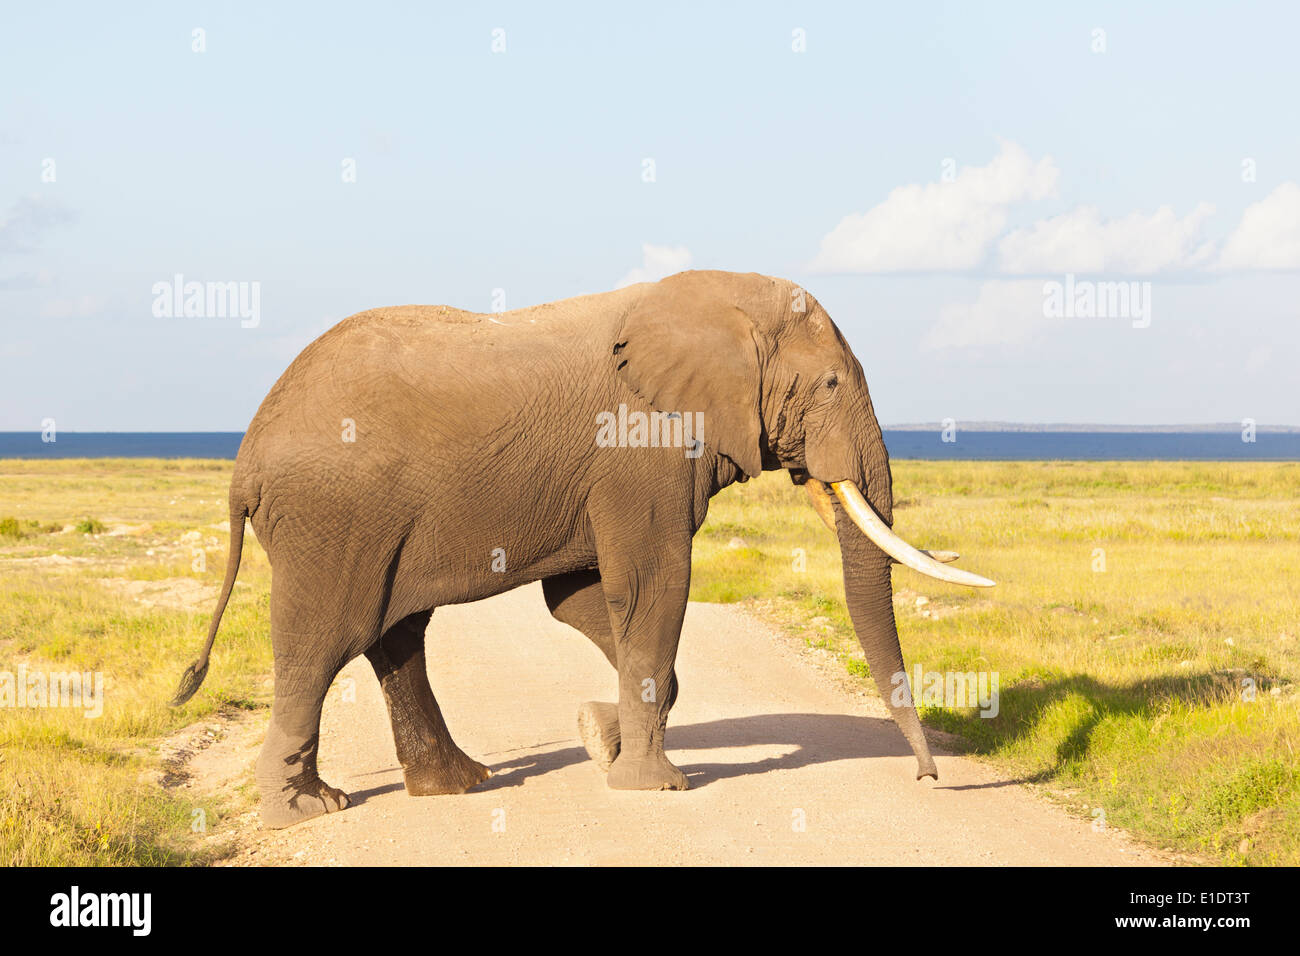 Un éléphant d'Afrique dans le Parc national Amboseli au Kenya pour traverser un chemin de terre. Banque D'Images